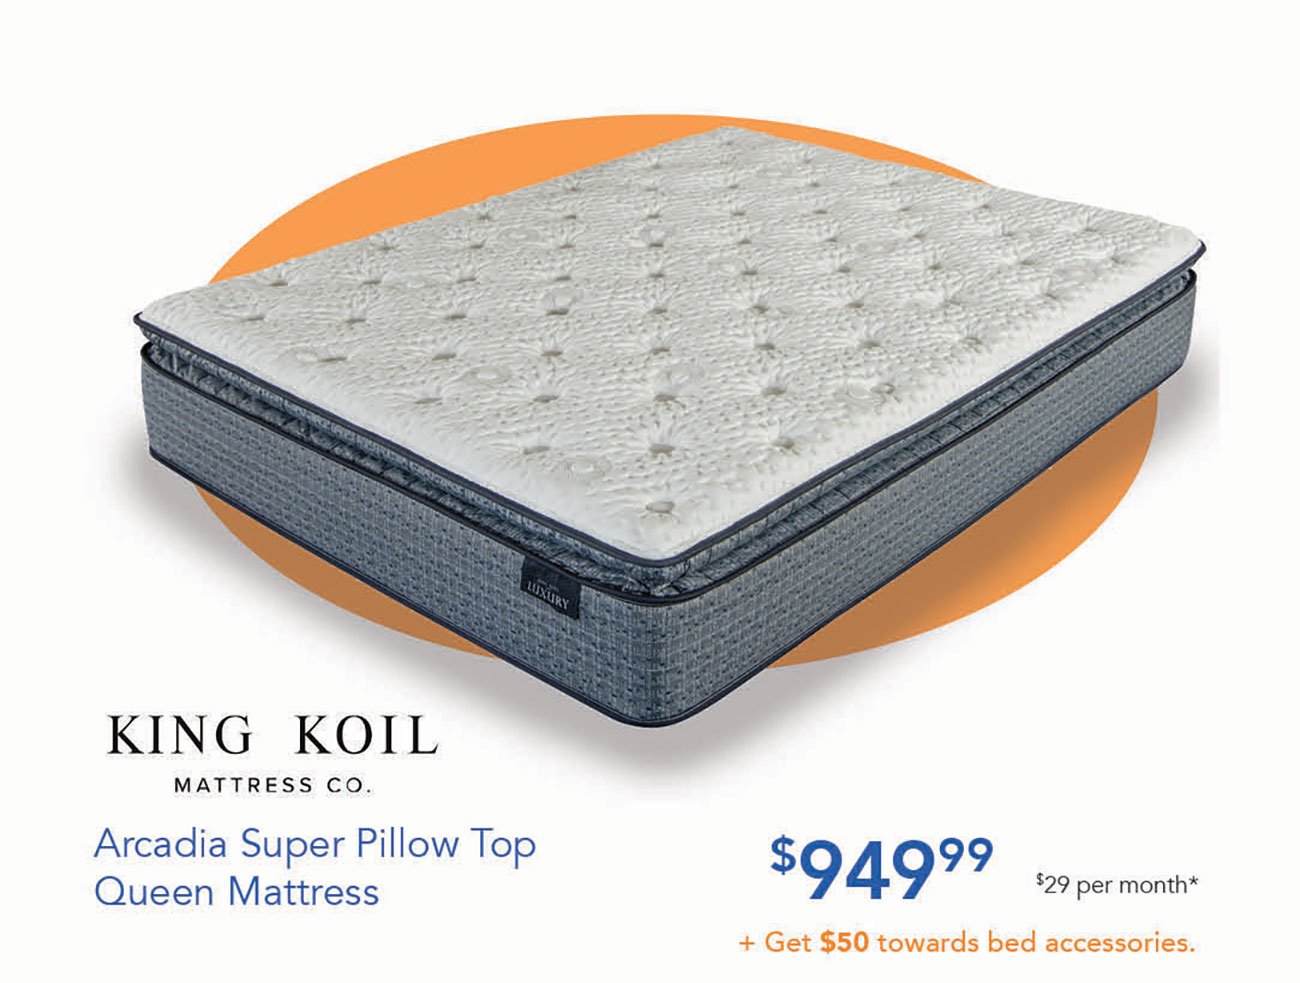  KING KOIL MATTRESS CO. Arcadia Super Pillow Top $94999 BT Queen Mattress Get $50 towards bed accessories. 